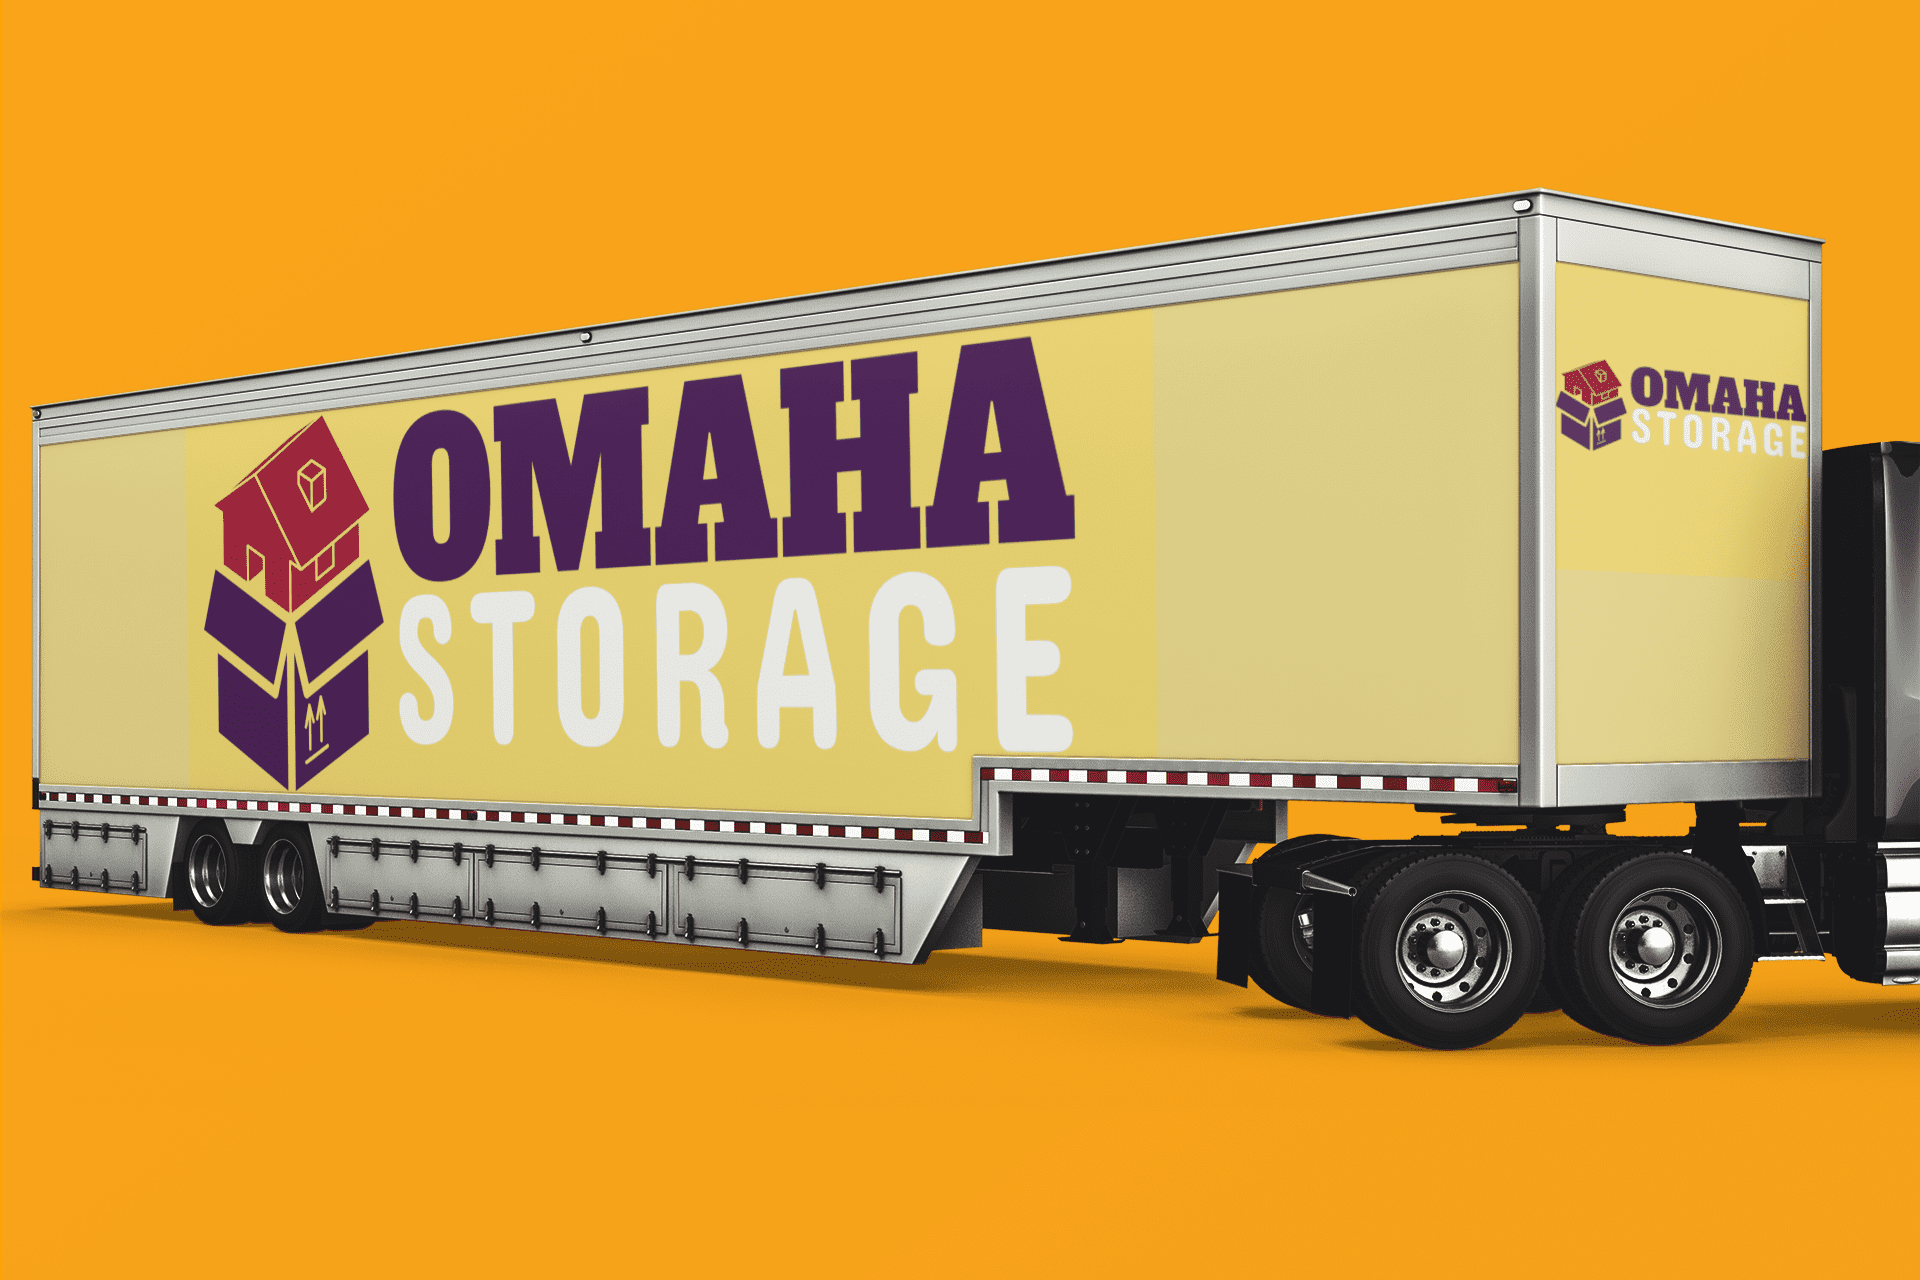 Omaha storage big rig truck